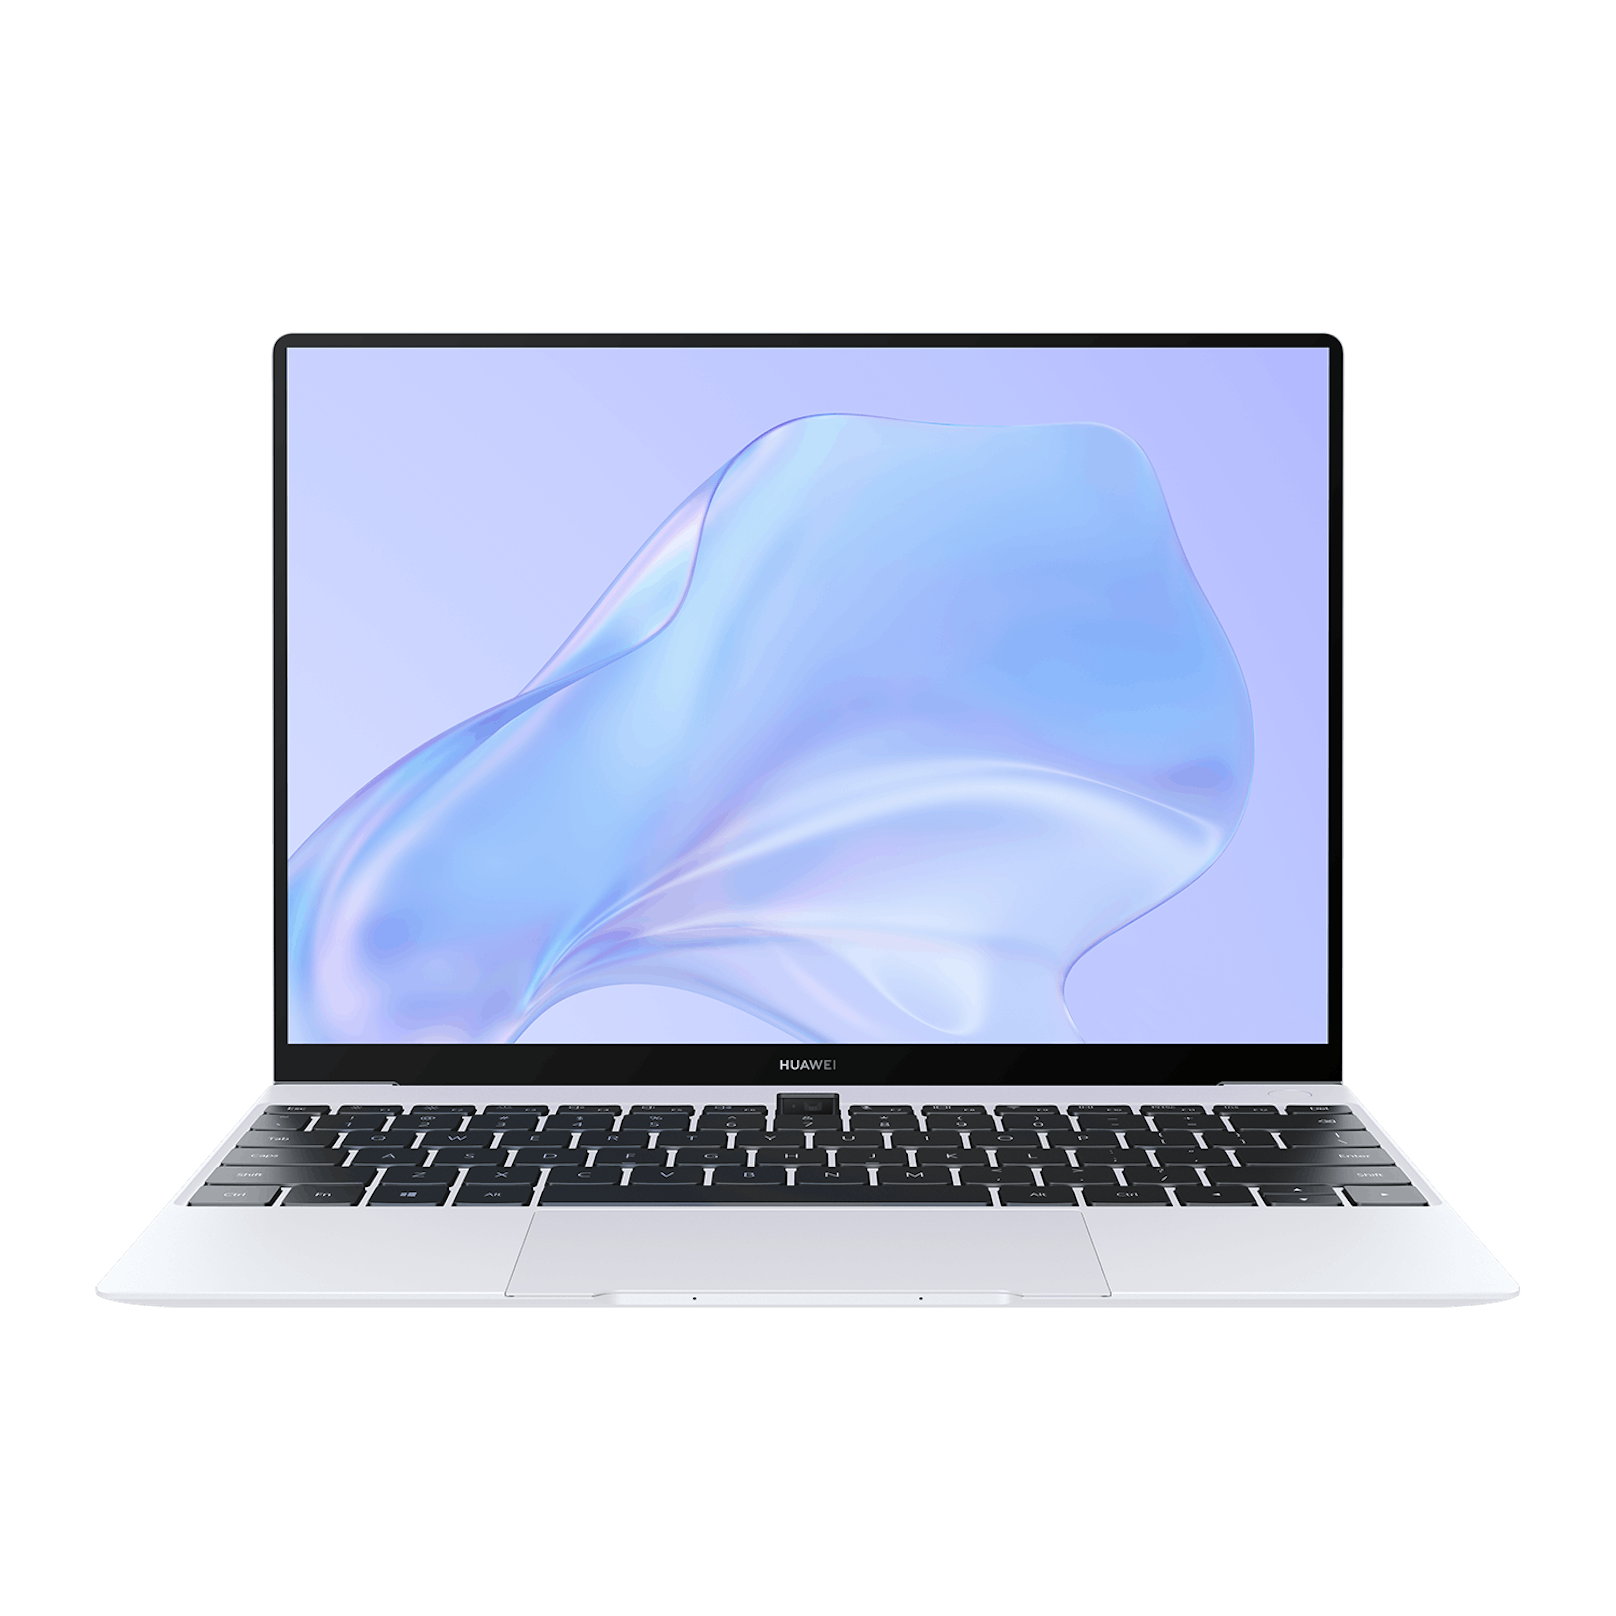 Das MateBook X ist nur einen Kilo schwer und 13,6 Millimeter dick. Es bietet ein 13,3 Zoll 3K Touchscreen-Display (3.000 x 2.000 Pixel).